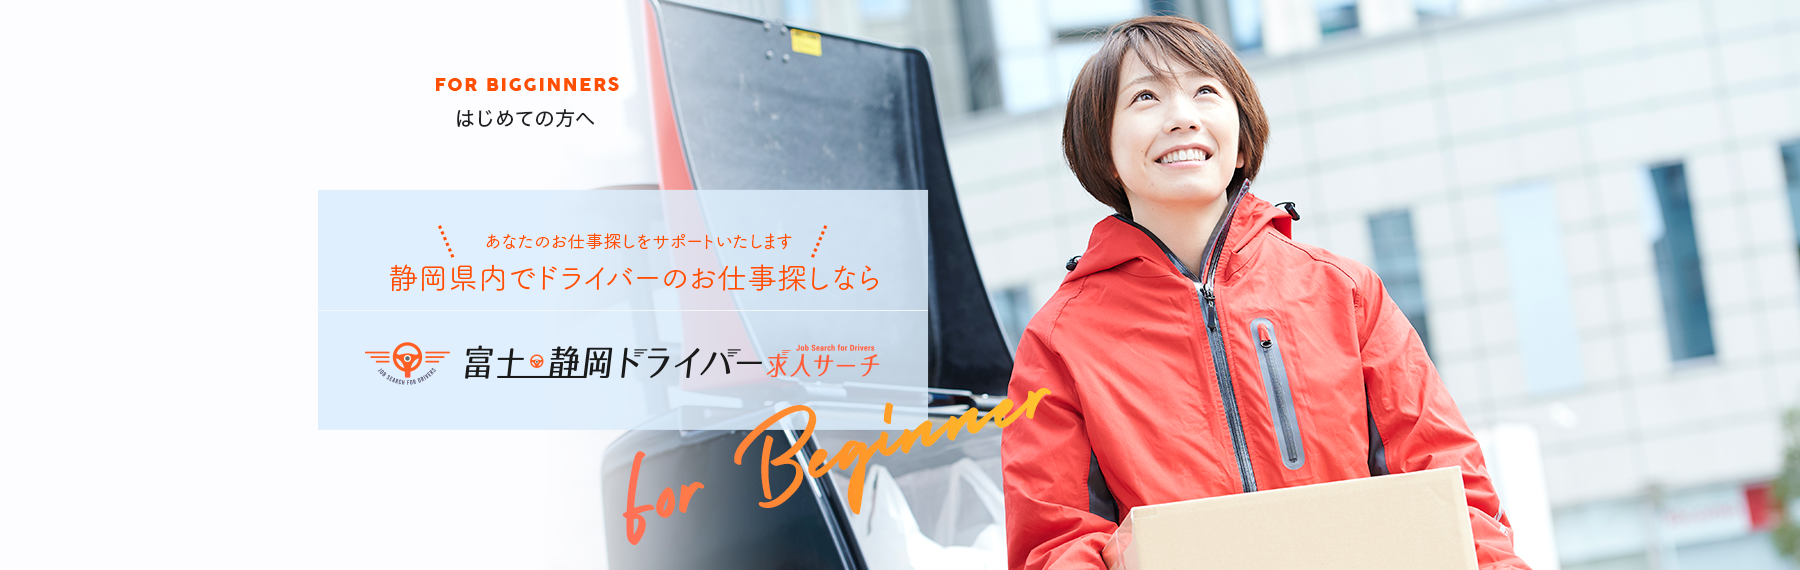 あなたのお仕事探しをサポートいたします。静岡県内でドライバーのお仕事探しなら 富士・静岡ドライバー求人サーチ